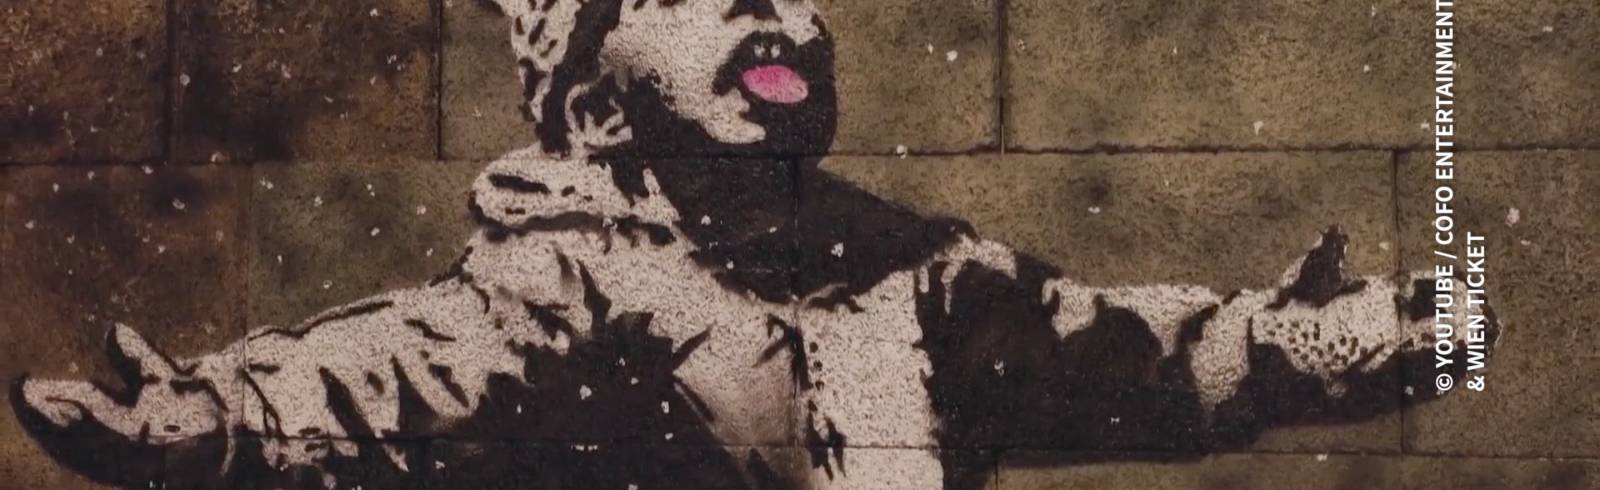 Streetart-Ikone Banksy in der Wiener Stadthalle